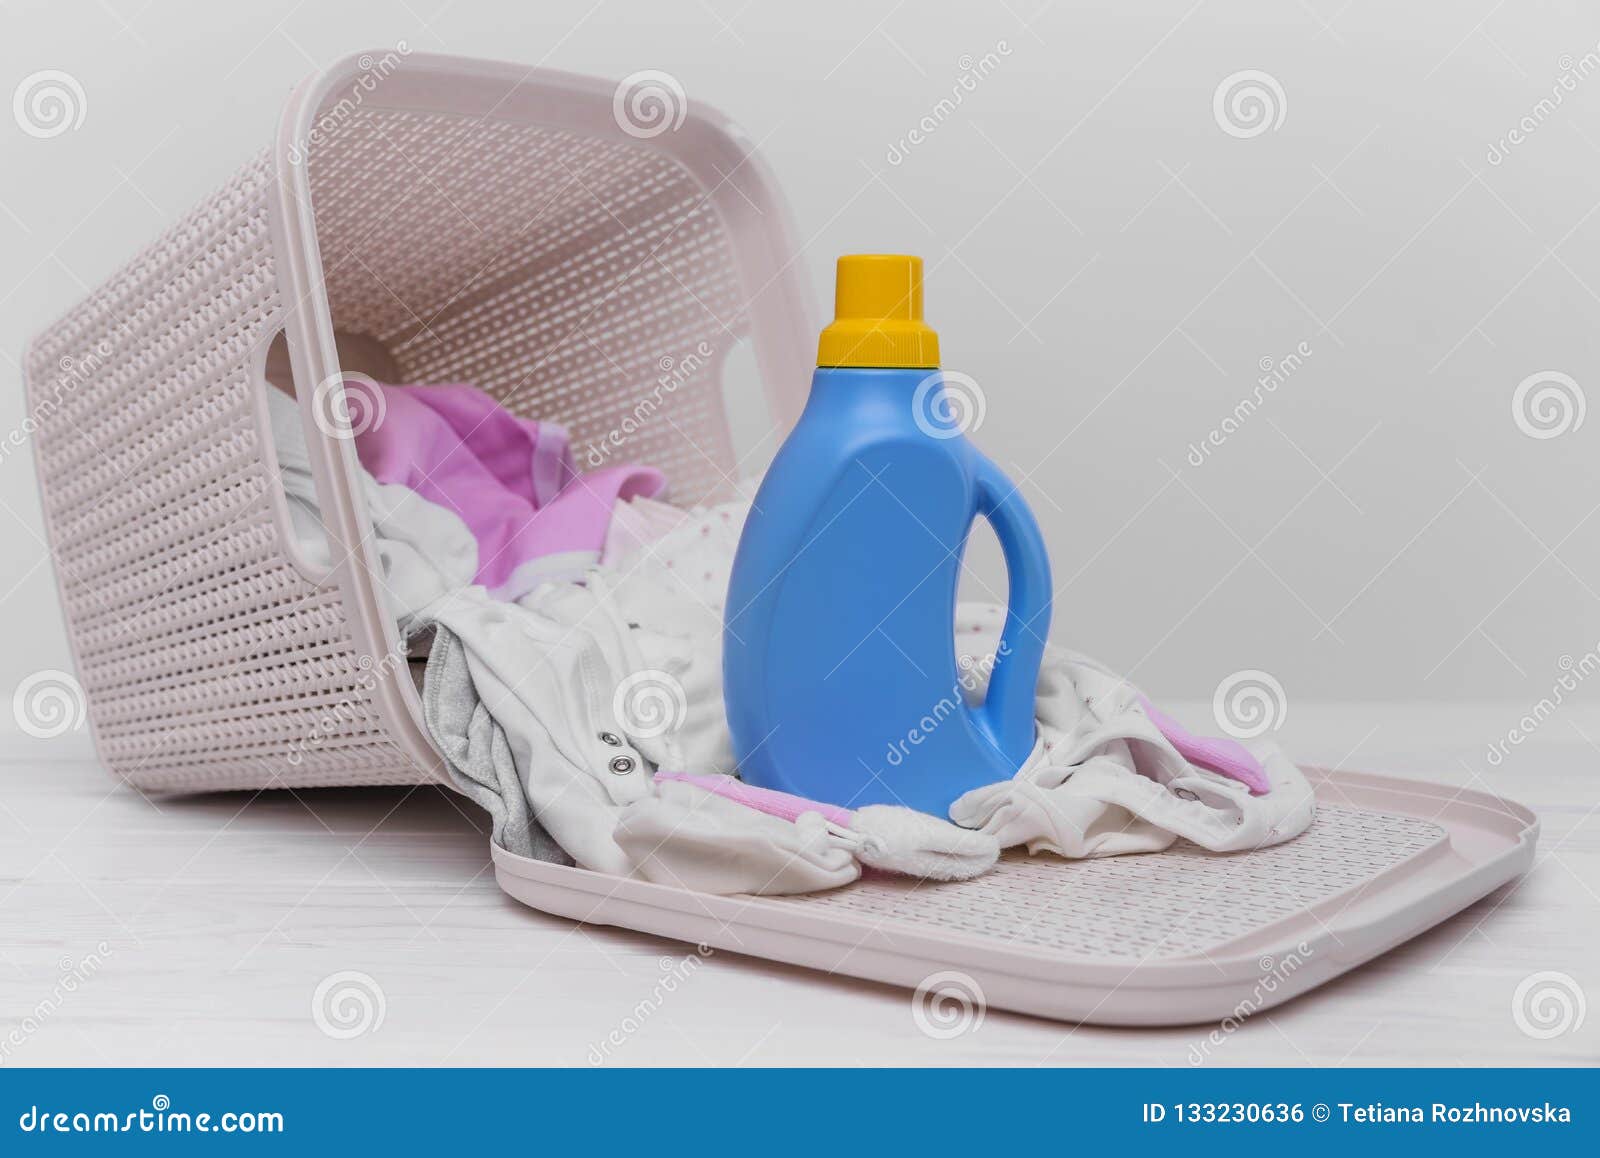 Botella De Detergente Para Ropa En La Ropa Del Bebé Foto de archivo - Imagen de lifestyle: 133230636